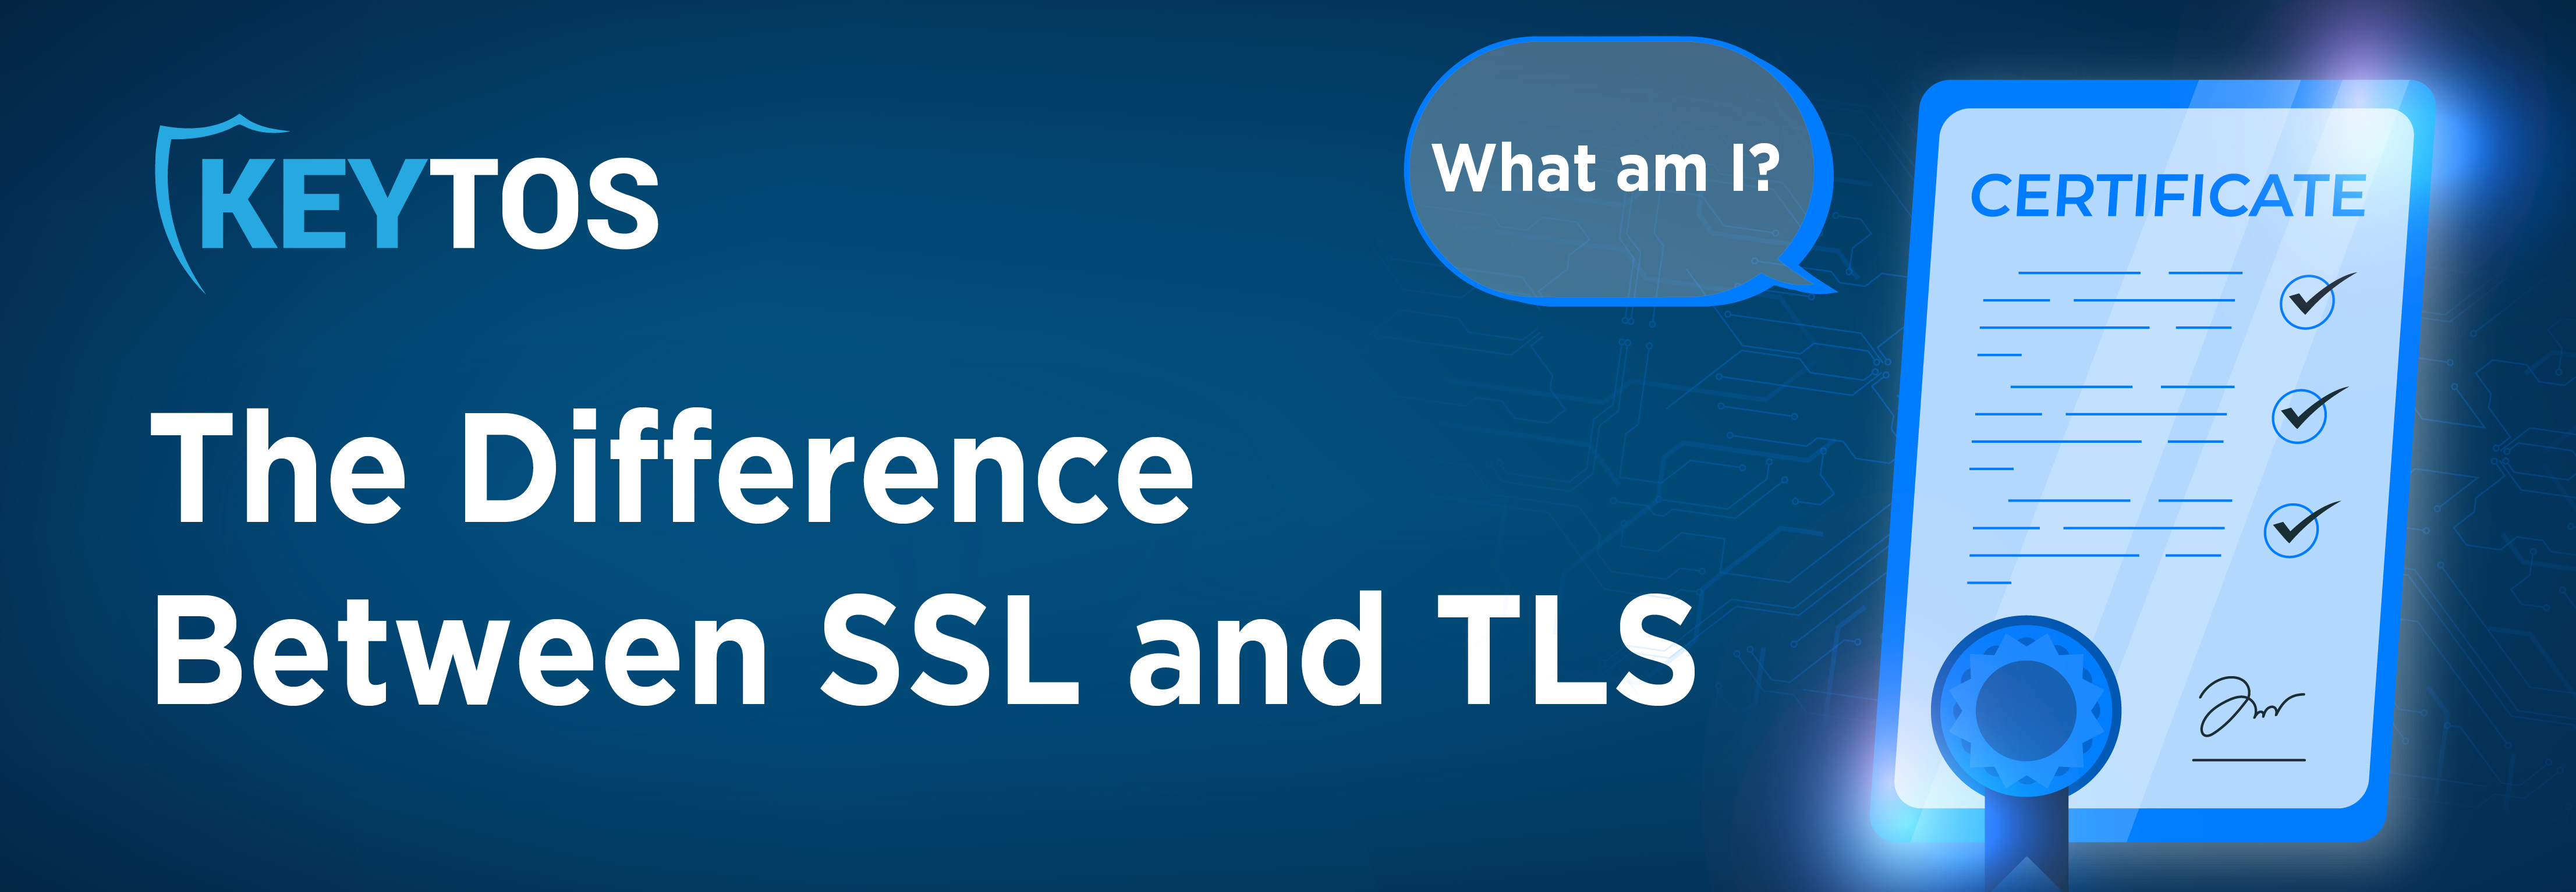 SSL vs. TLS; the difference between SSL and TLS